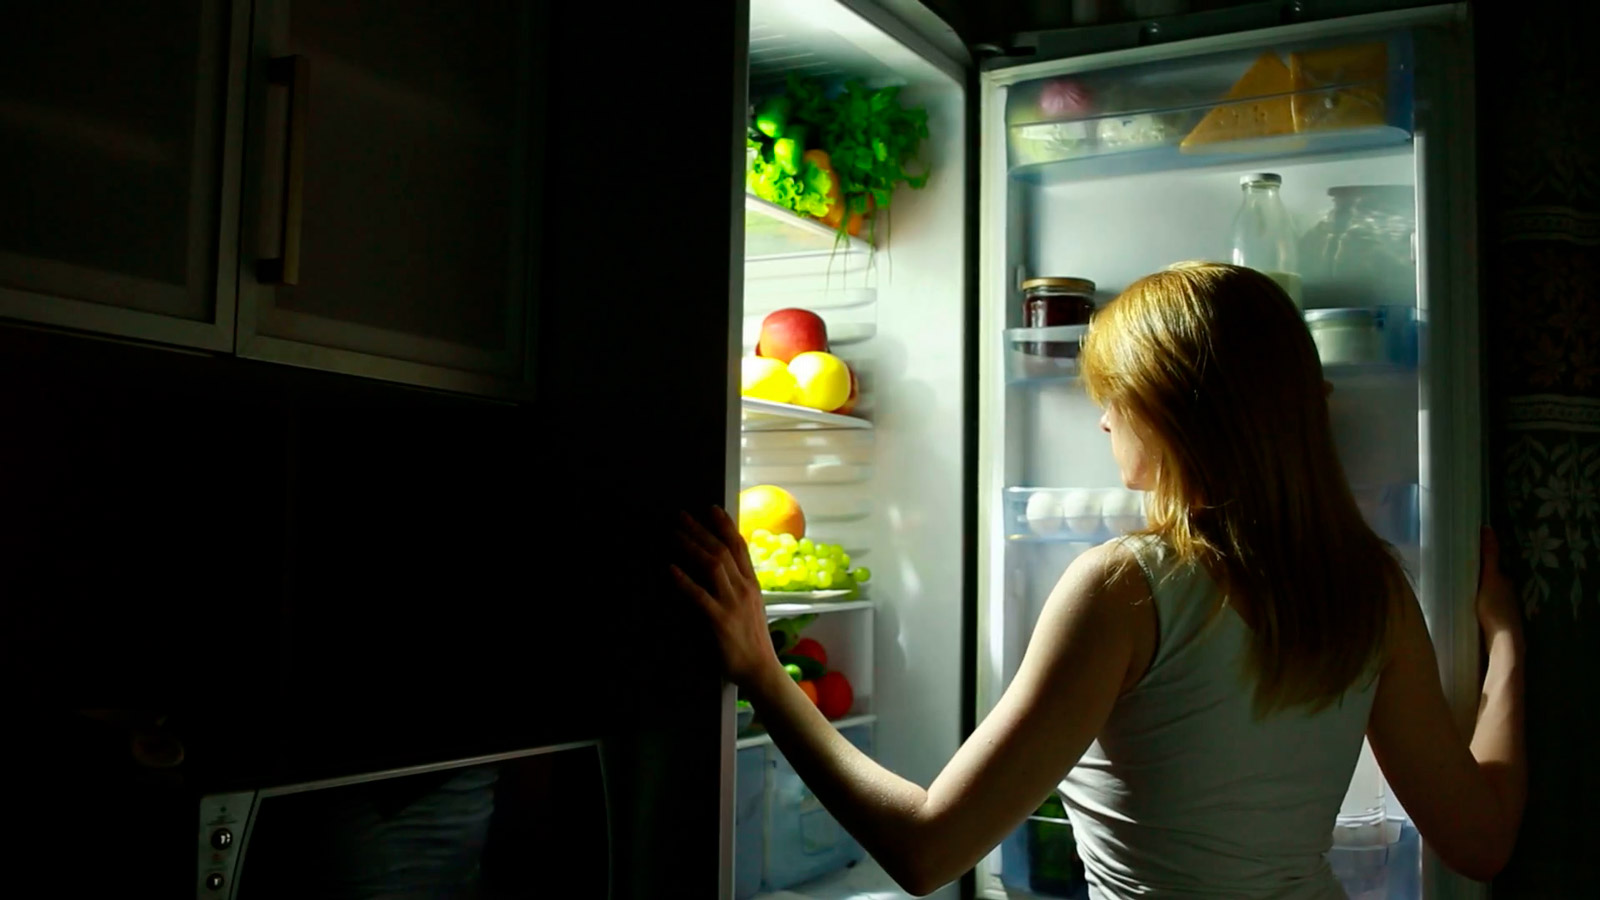 Песня она ночью на кухне скинет. Девушка возле холодильника. Девушка у холодильника ночью. Холодильник. Человек возле холодильника.